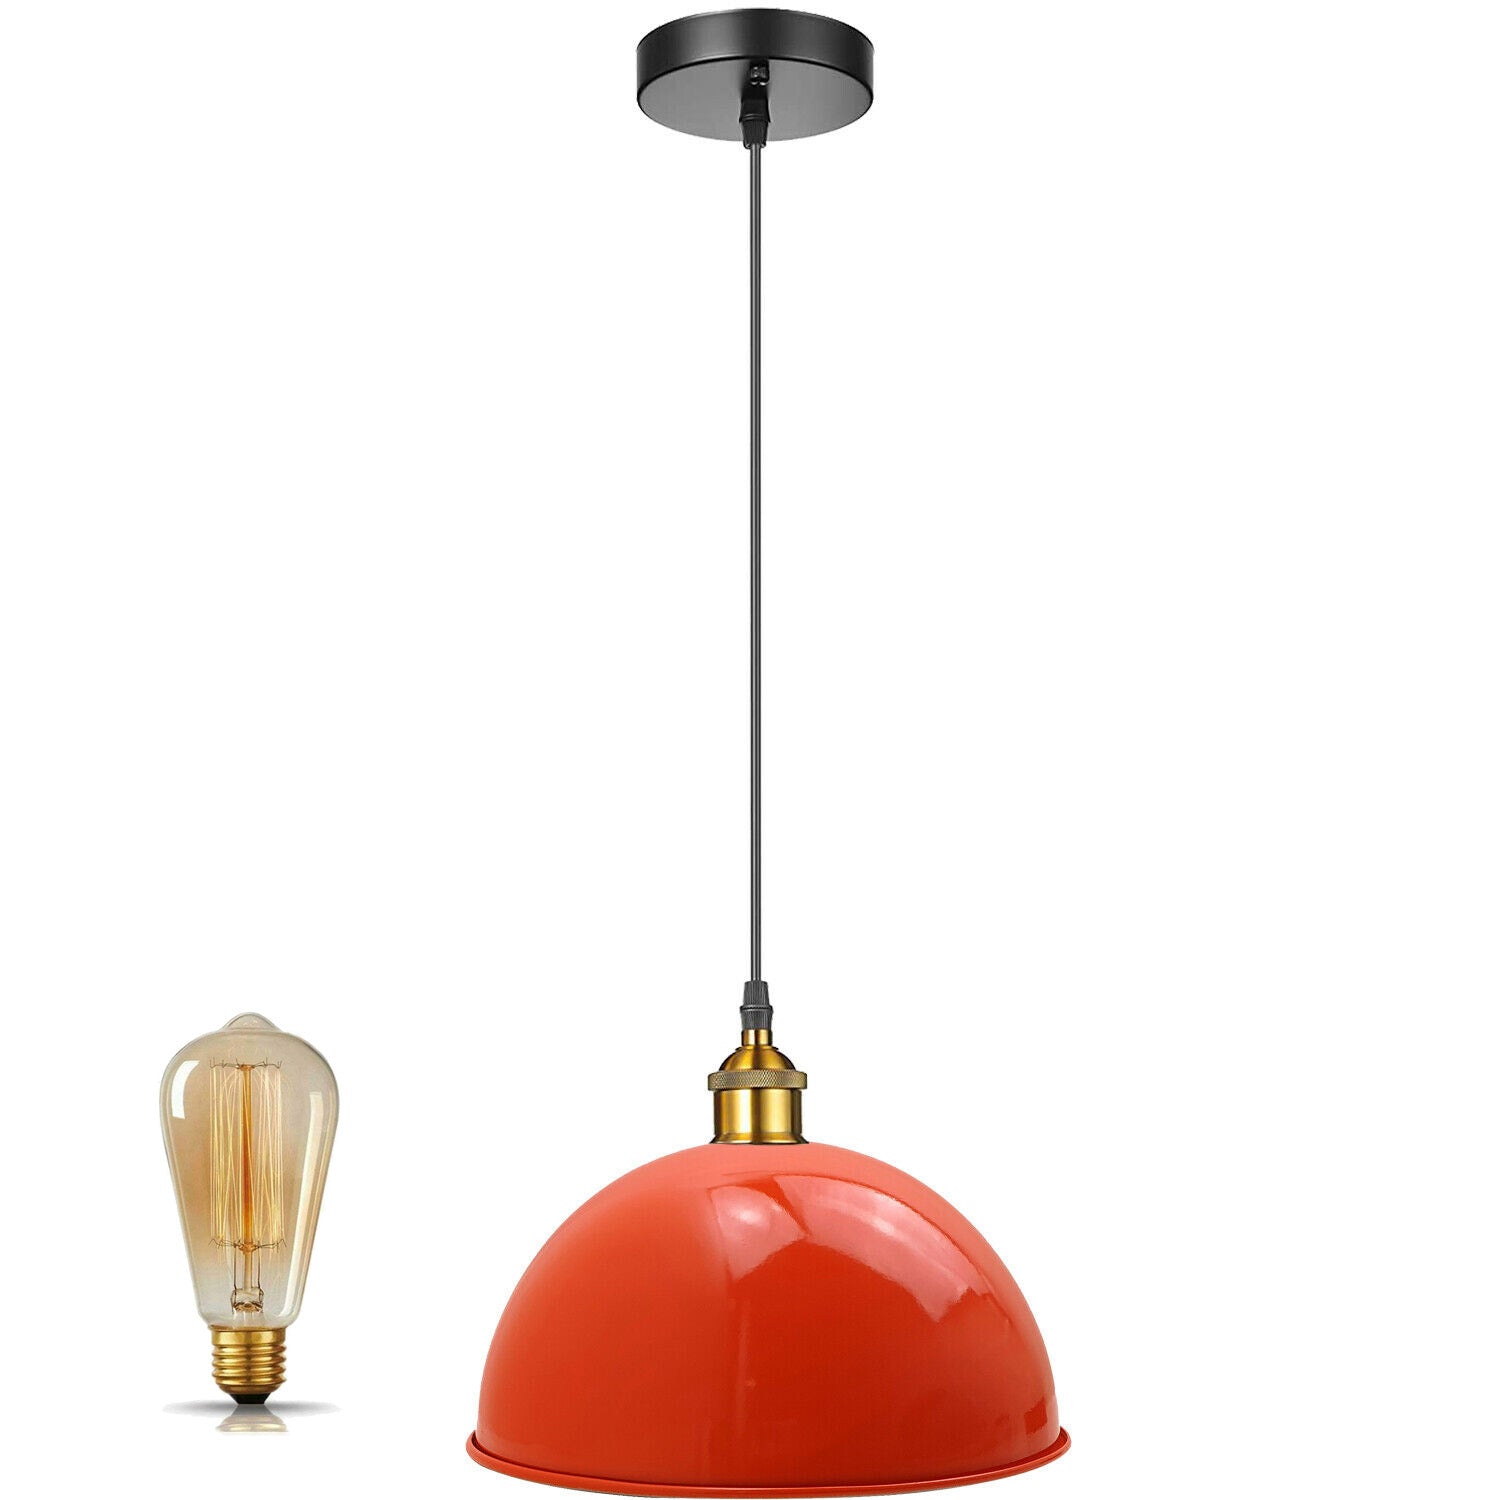 Vintage Modern Orange Metal Shade Ceiling Pendant Light Indoor Light Fitting With 95cm Adjustable Wire~1271 - LEDSone UK Ltd